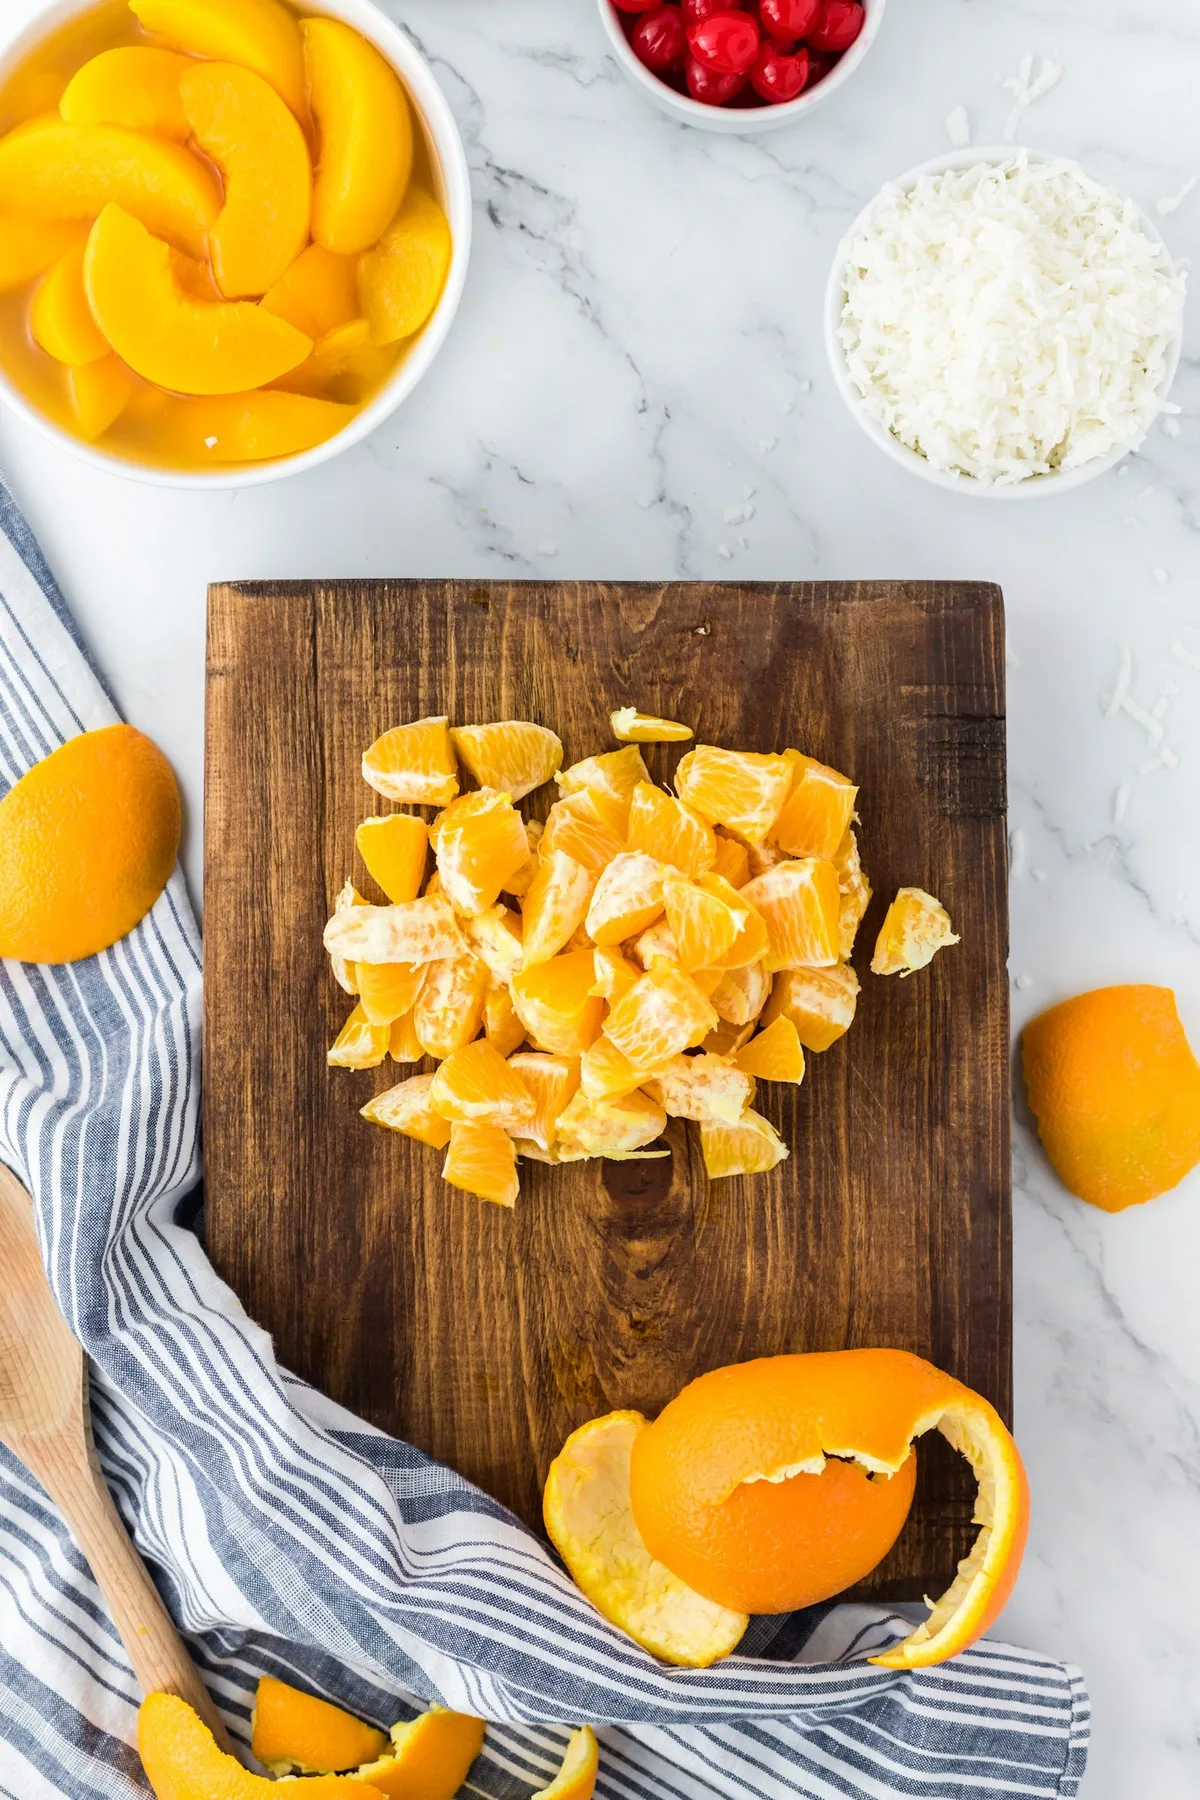 segmented oranges for ambrosia fruit salad